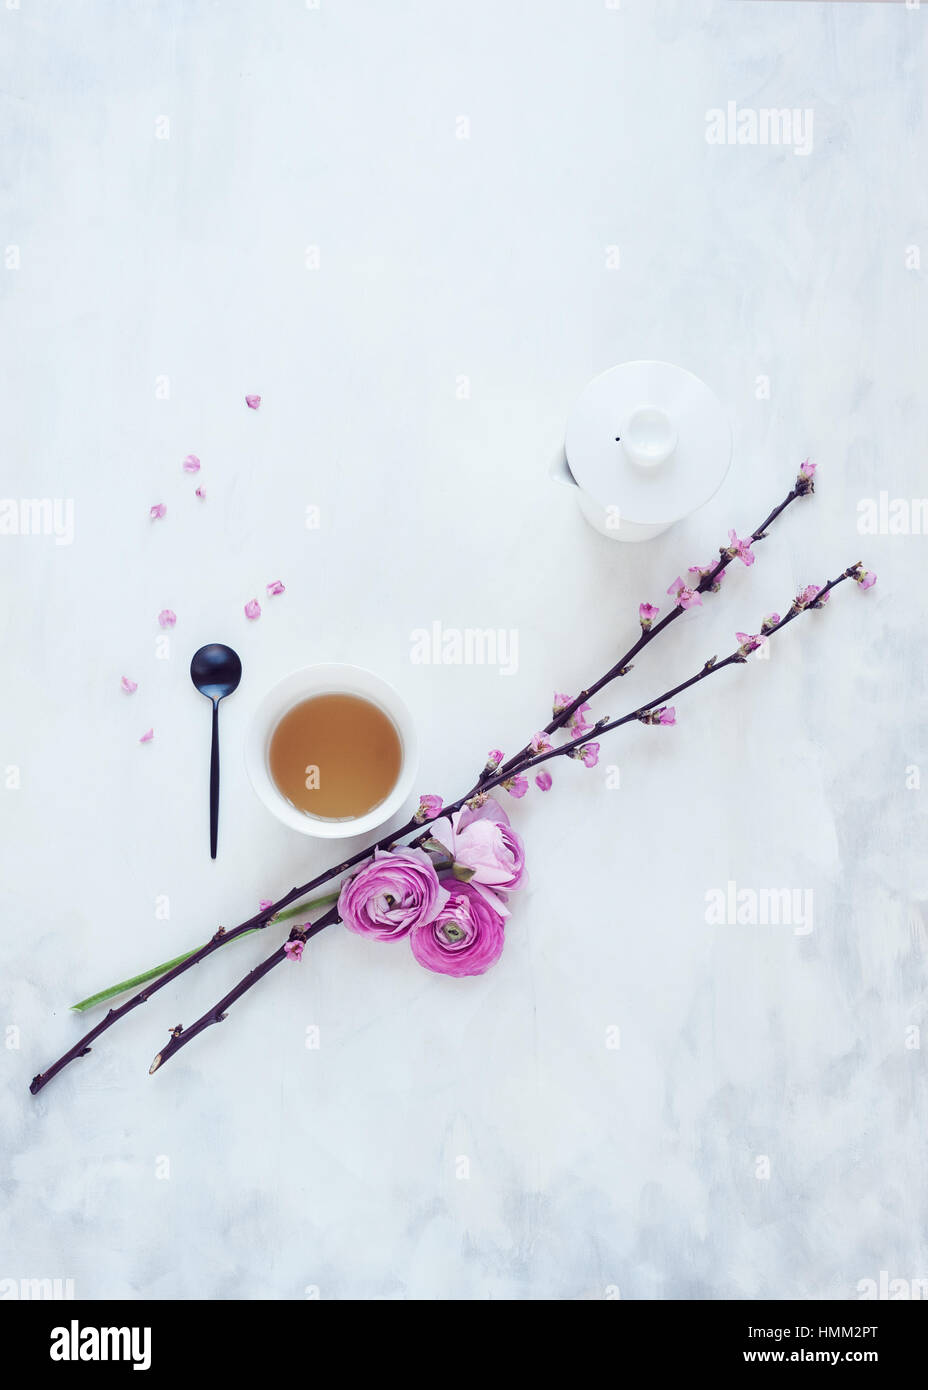 Sentar planas de flores de primavera flor de cerezo y ranunculus dispuestas sobre un telón de fondo pintado de color blanco y gris con una tetera tetera Foto de stock